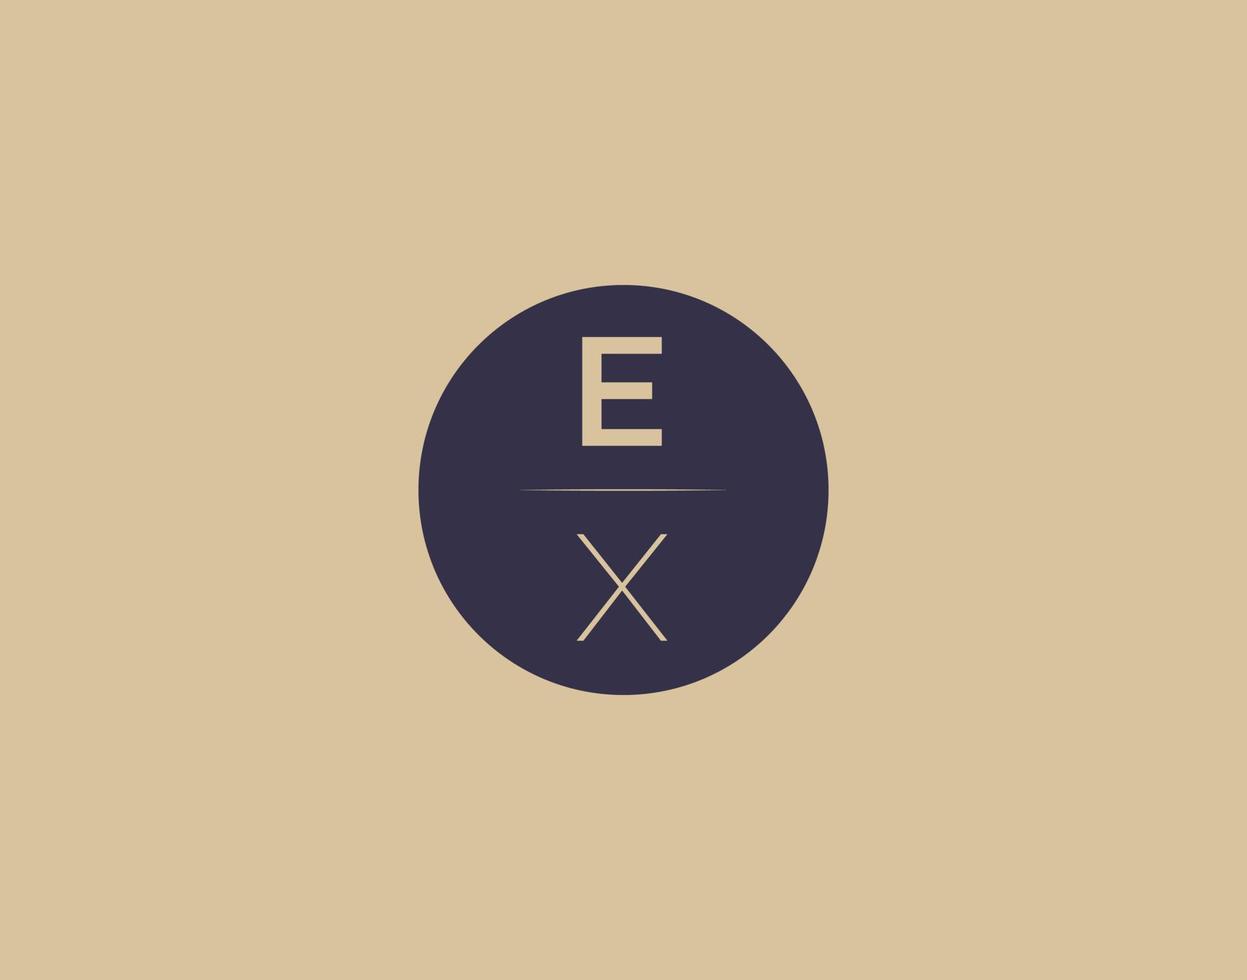 EX letter modern elegant logo design vector images